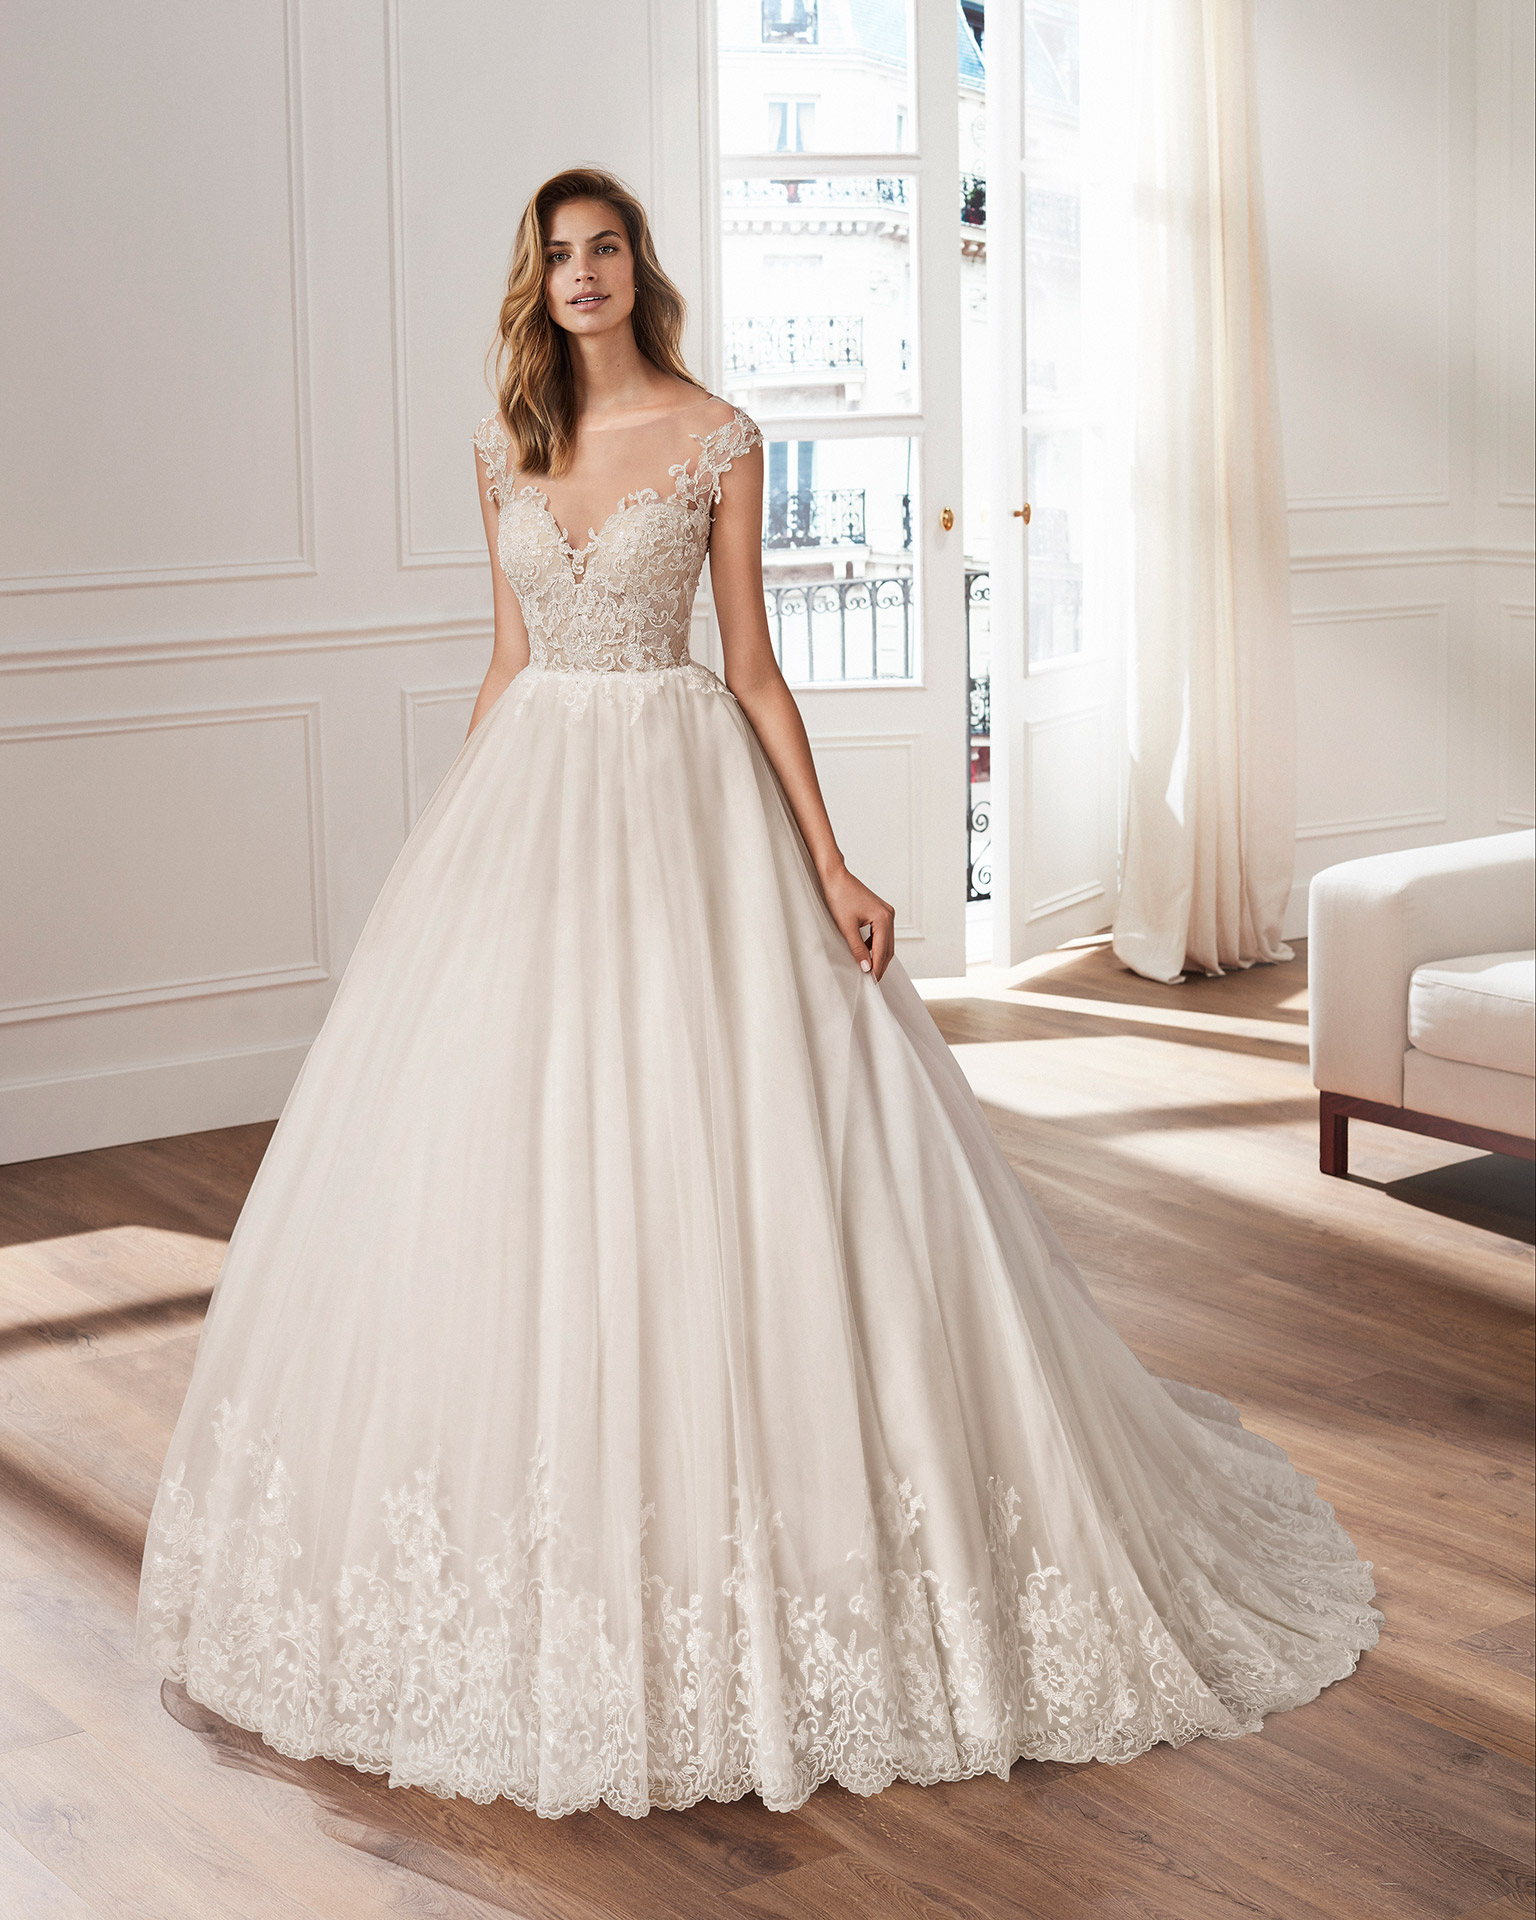 Vestido de novia estilo línea A en tul, encaje y pedrería, con escote V y espalda escotada, natural o rose. Colección  2020.